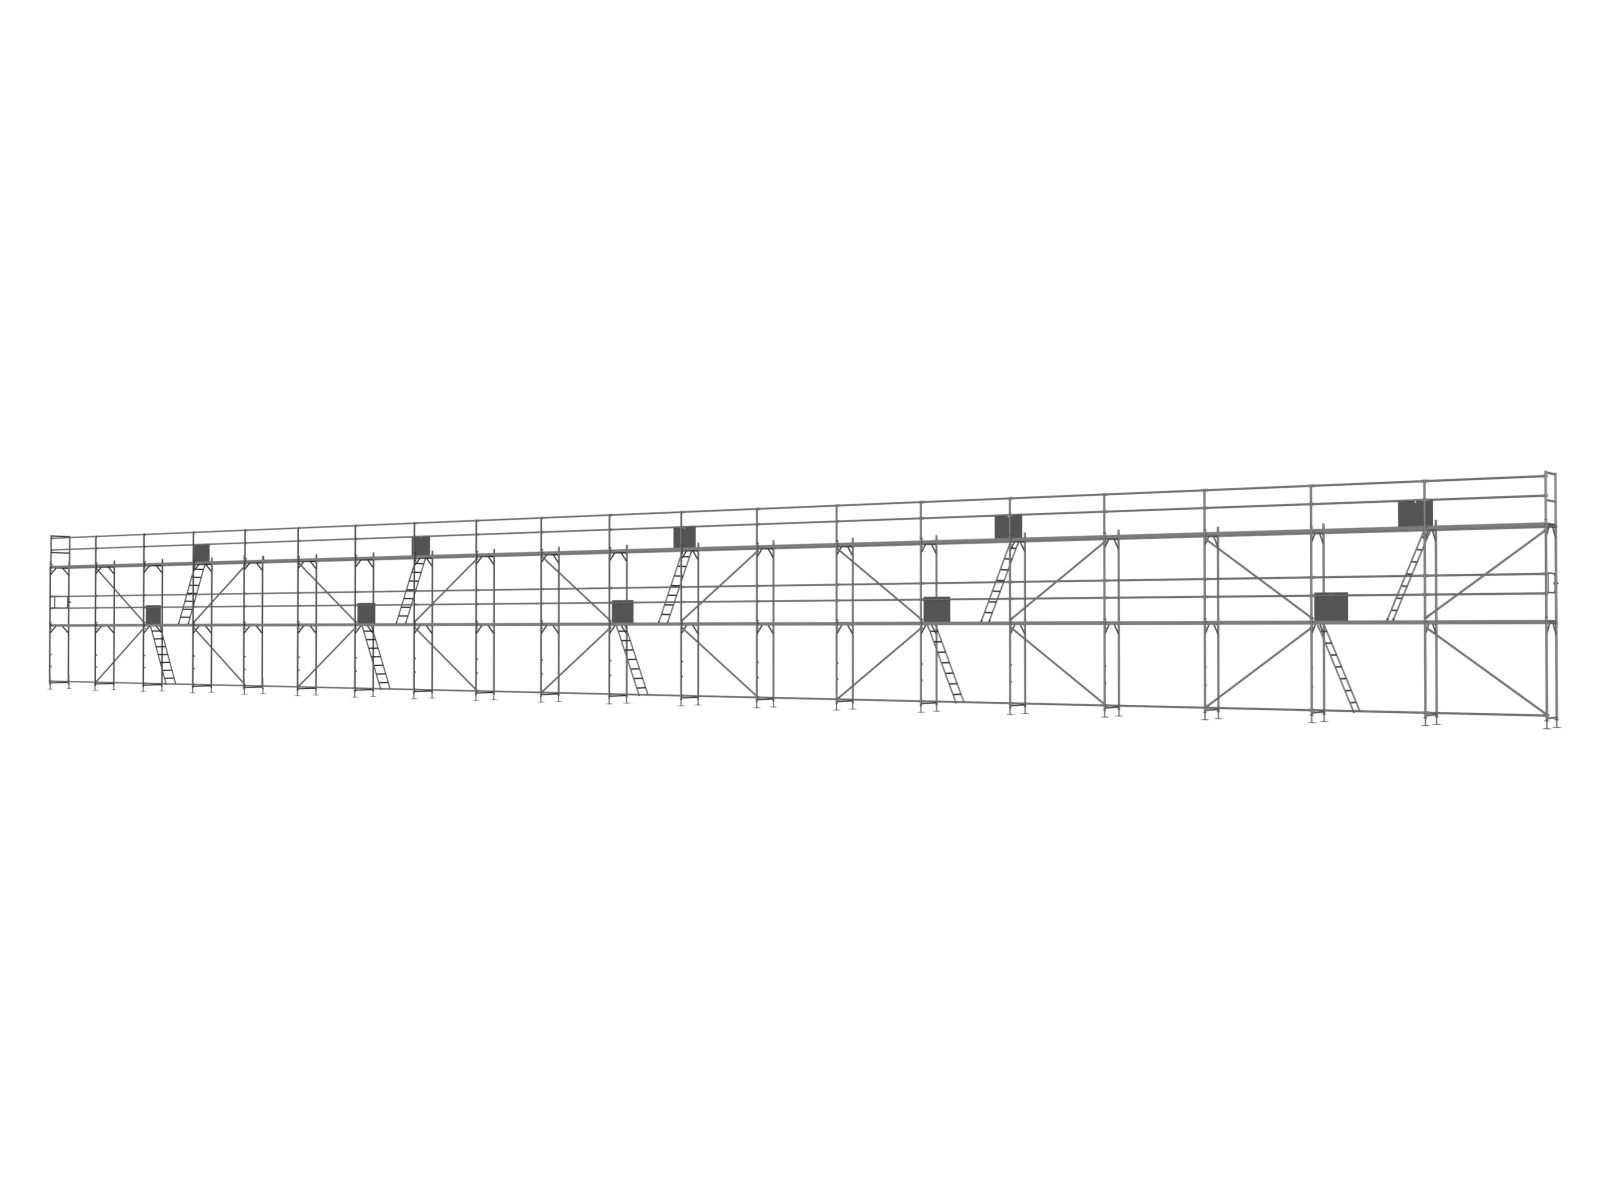 Alu Traufseitengerüst 300 qm - 2,5 m Felder - 50 m lang - 6 m Arbeitshöhe - Basis-Gerüst inkl. Aufstieg & Befestigung